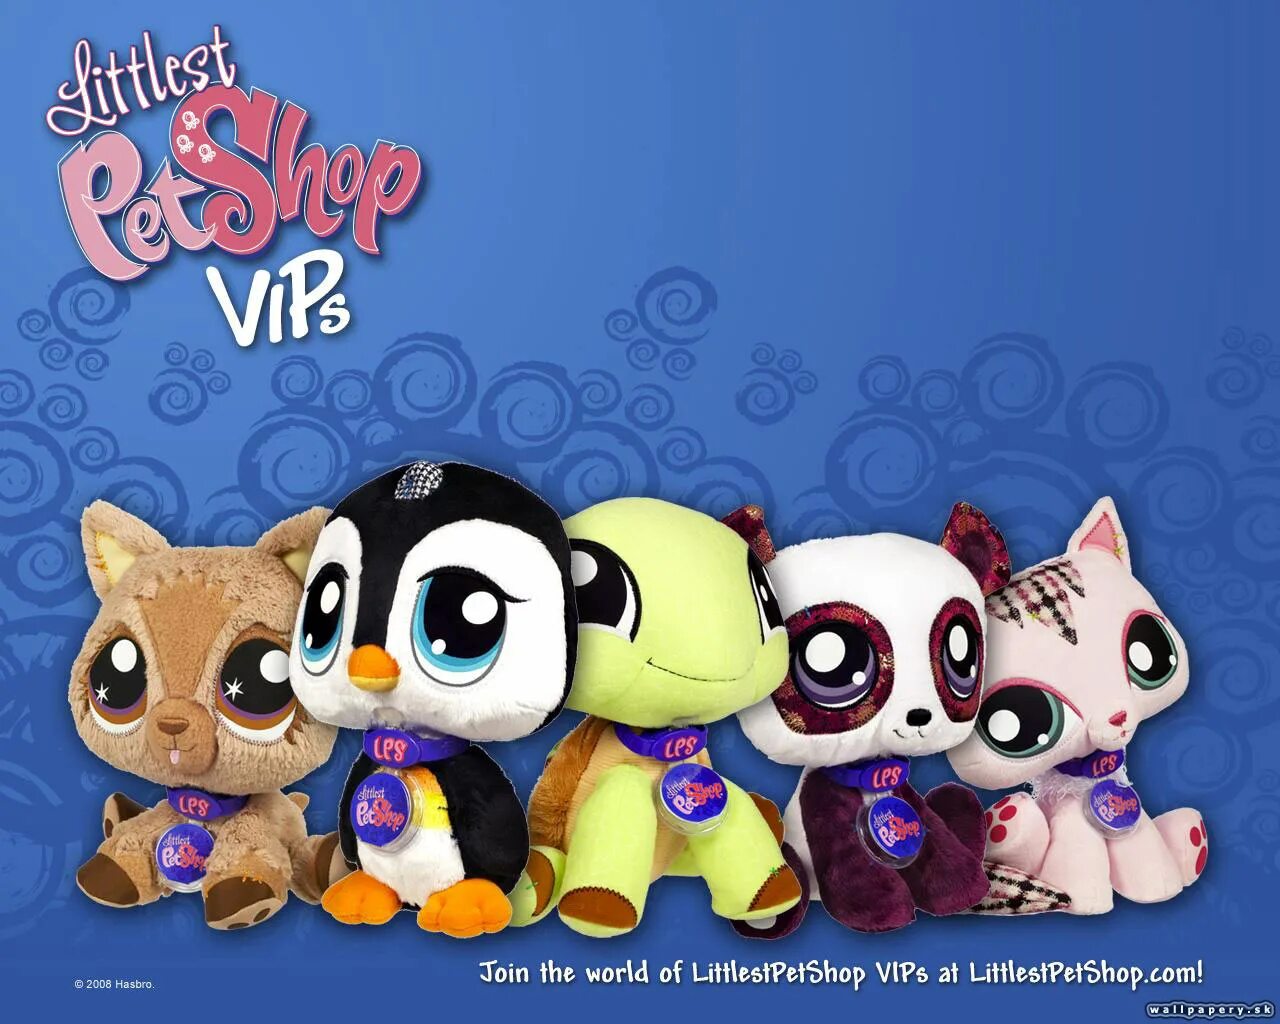 Little is Pet shop игра. My Littlest Pet shop игра. Littlest Pet shop 2010. Littlest Pet shop 2011. Heart pet shop